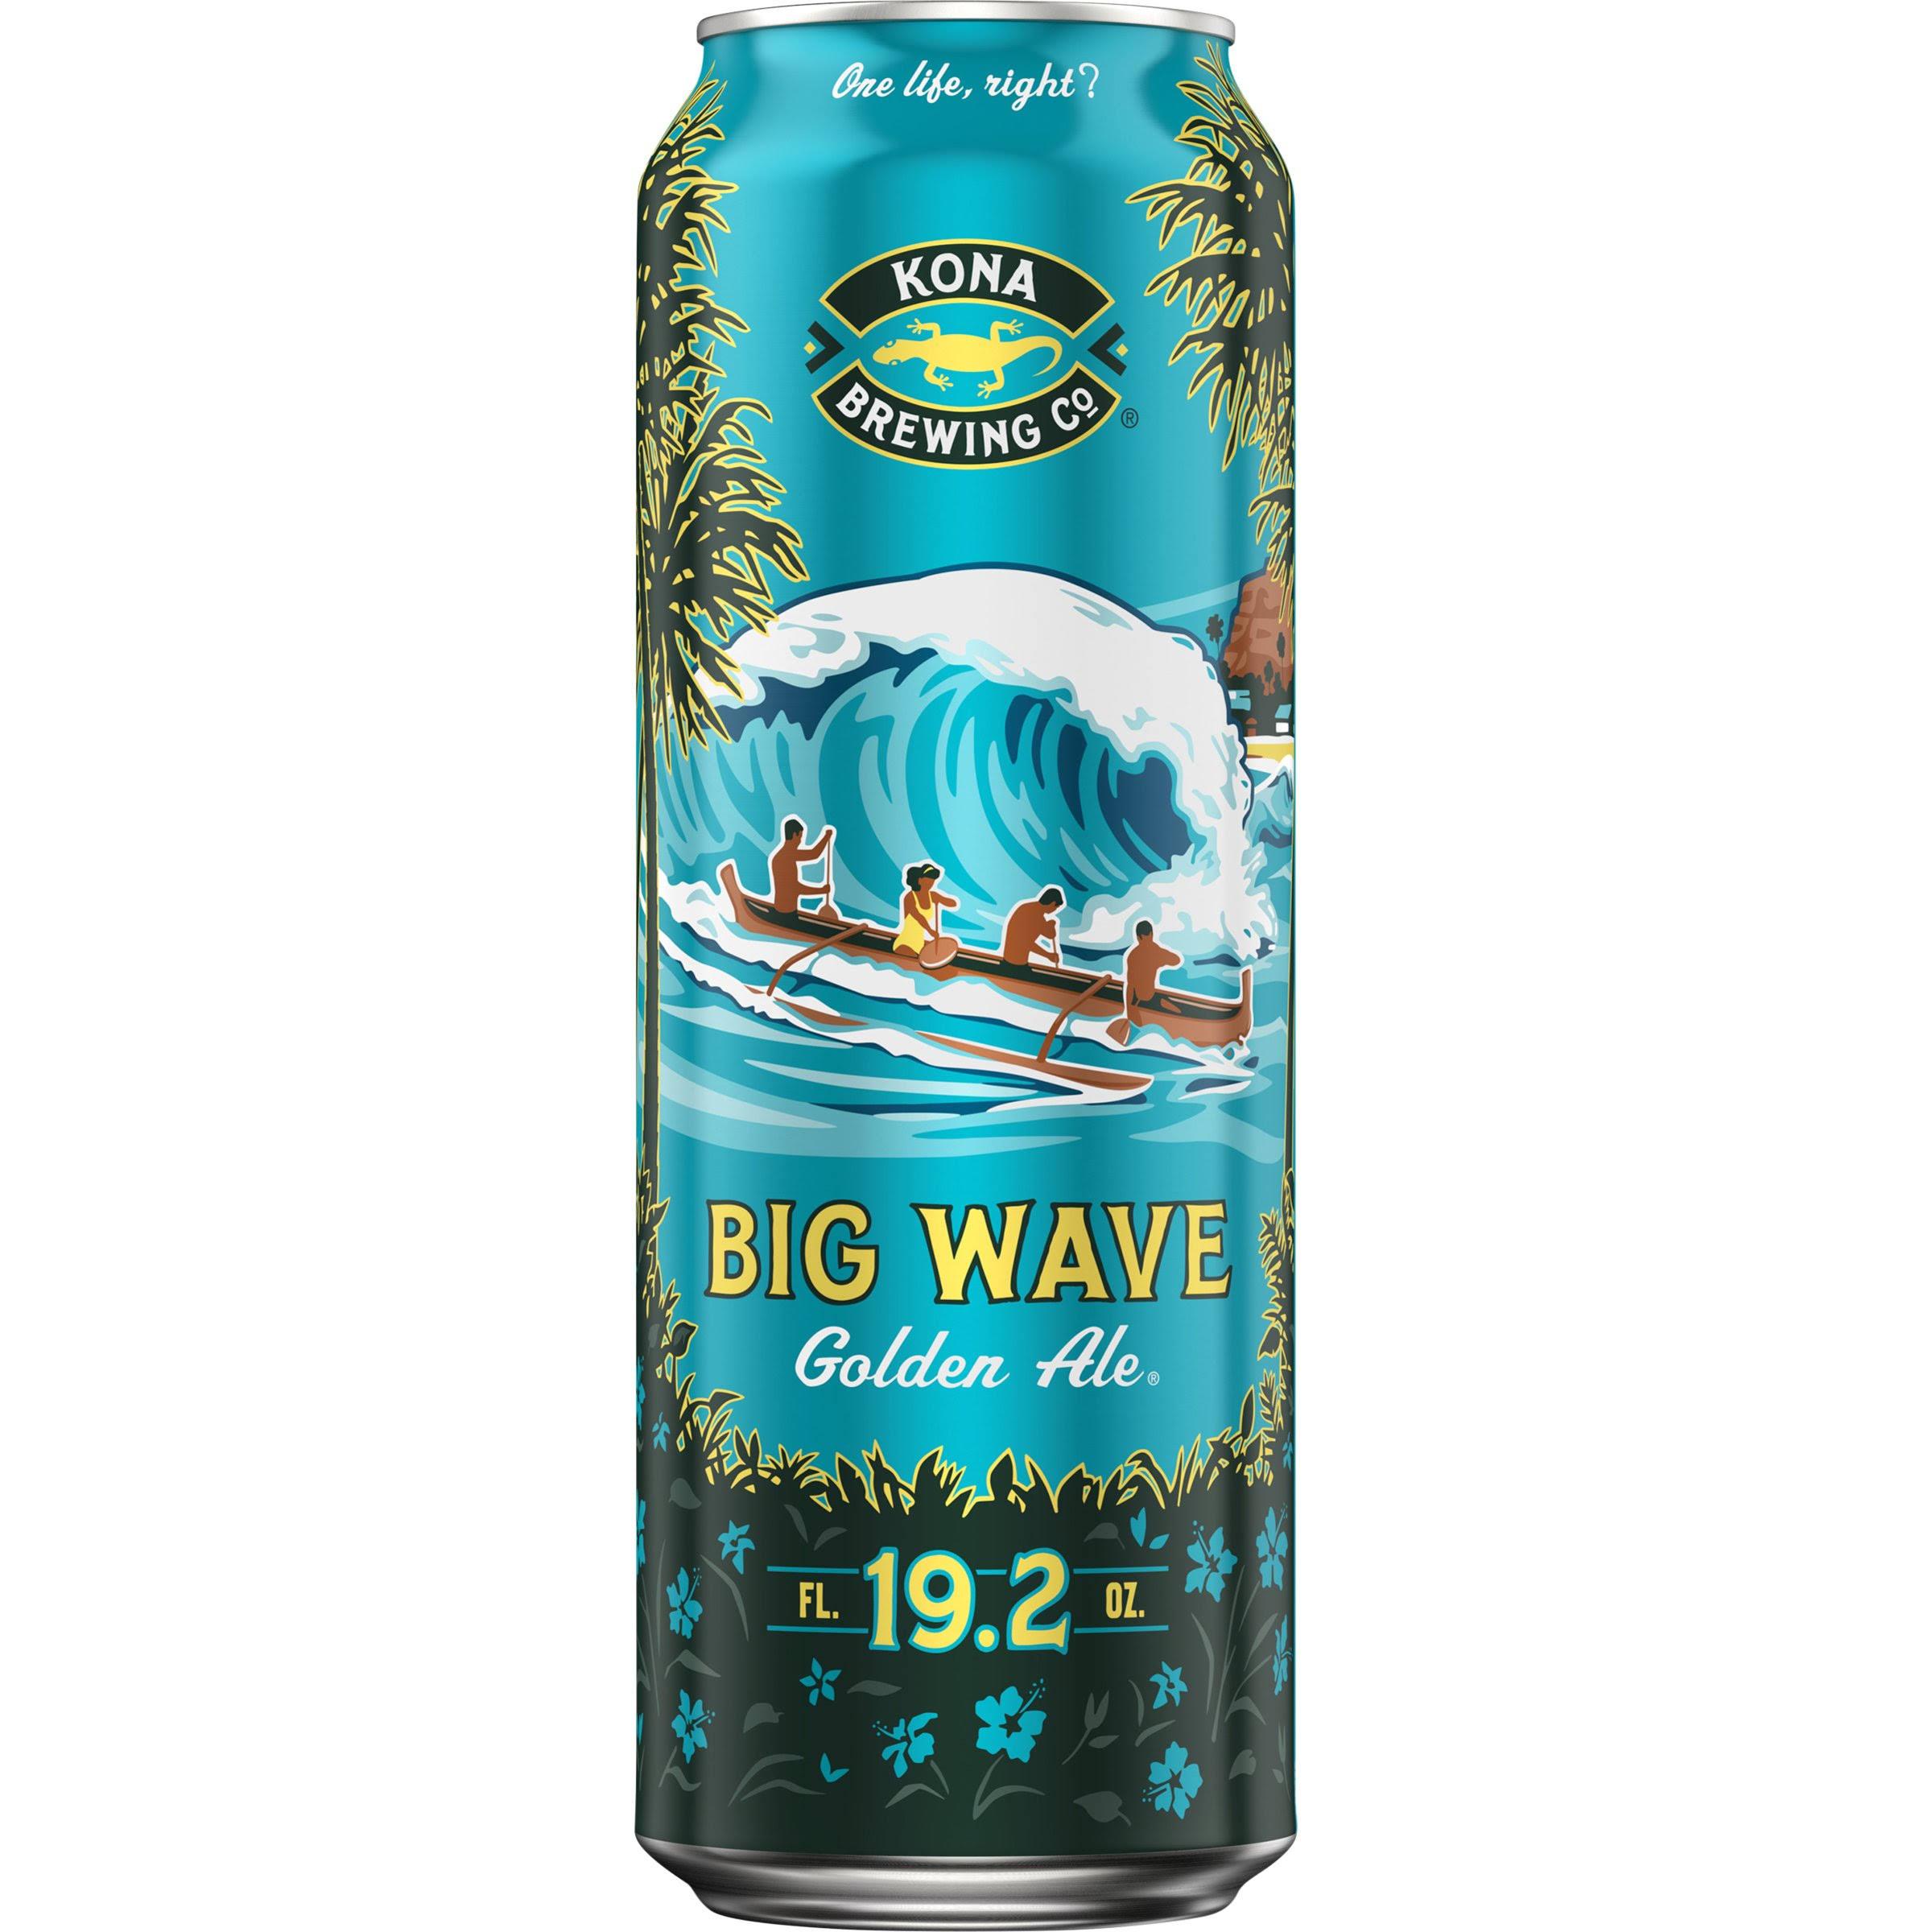 Kona Brewing Co Beer, Golden Ale, Big Wave - 19.2 fl oz